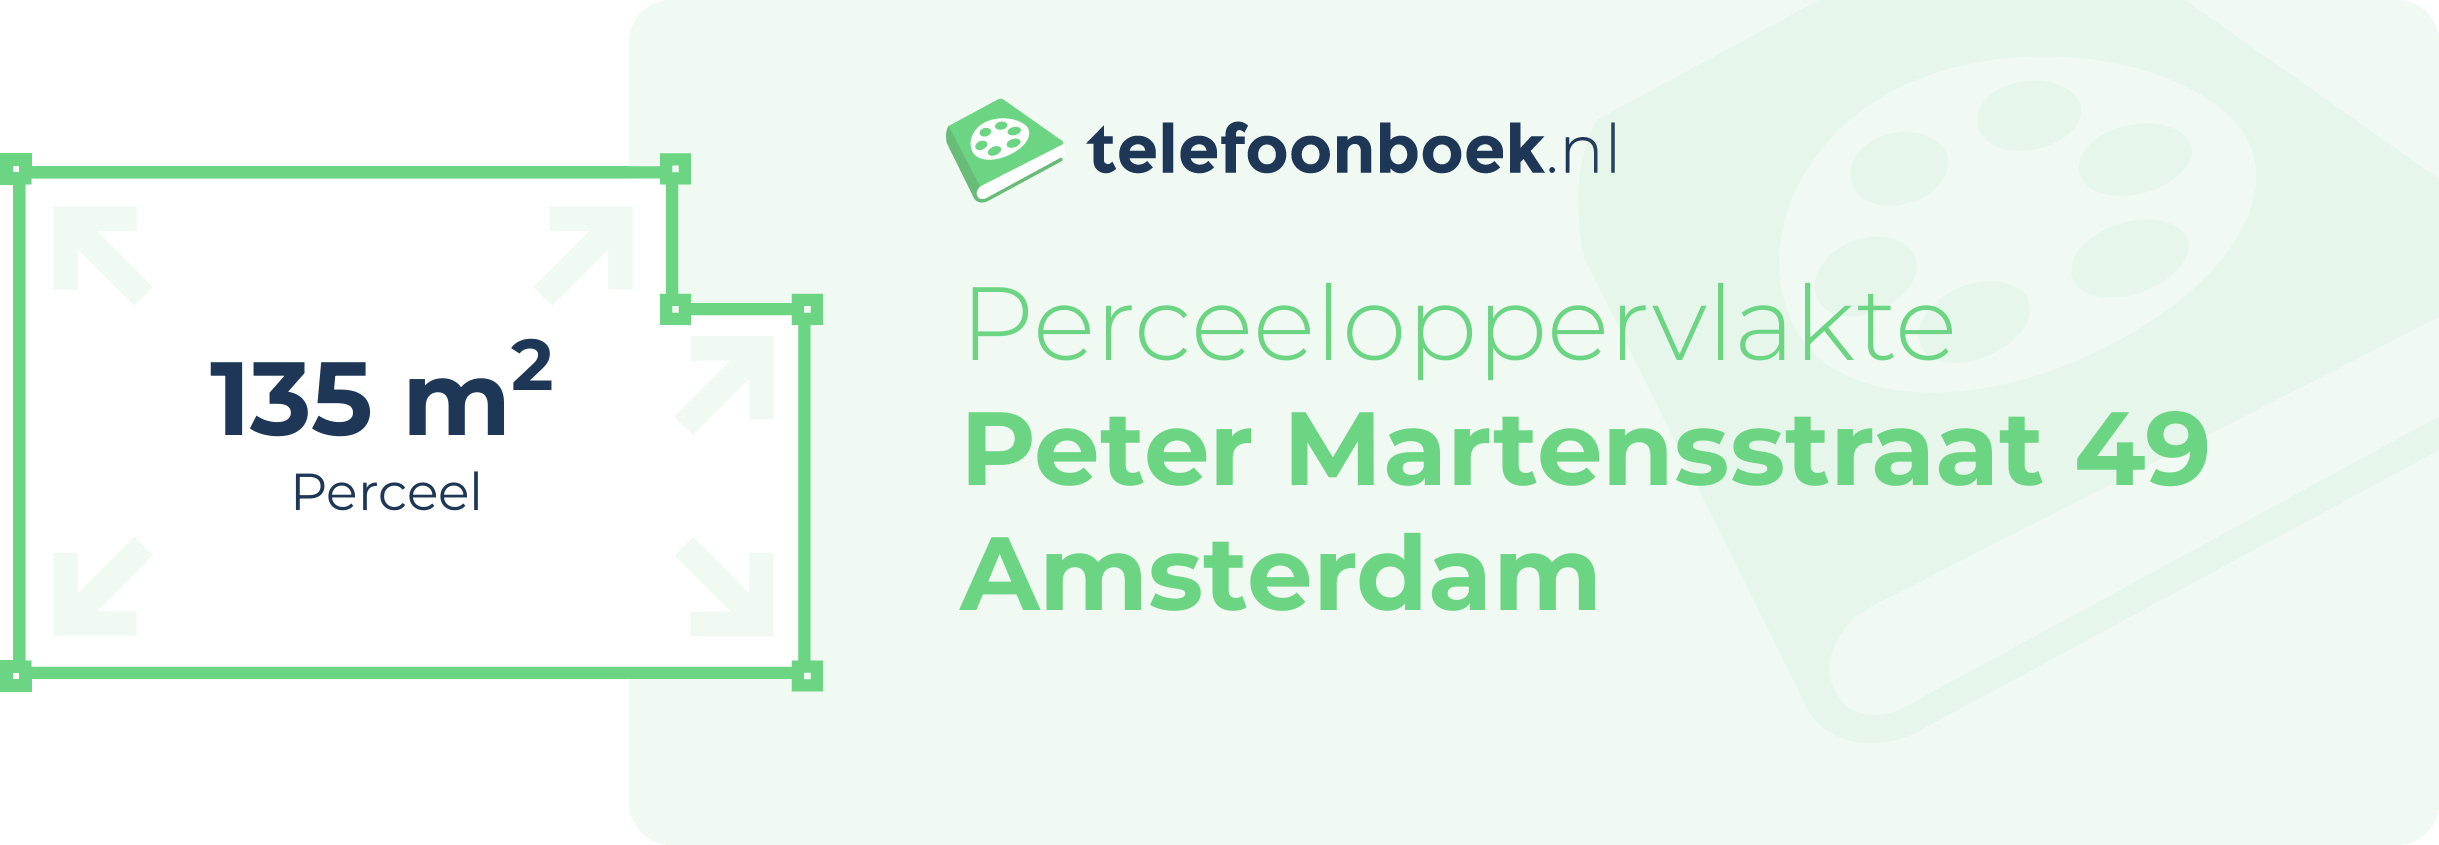 Perceeloppervlakte Peter Martensstraat 49 Amsterdam